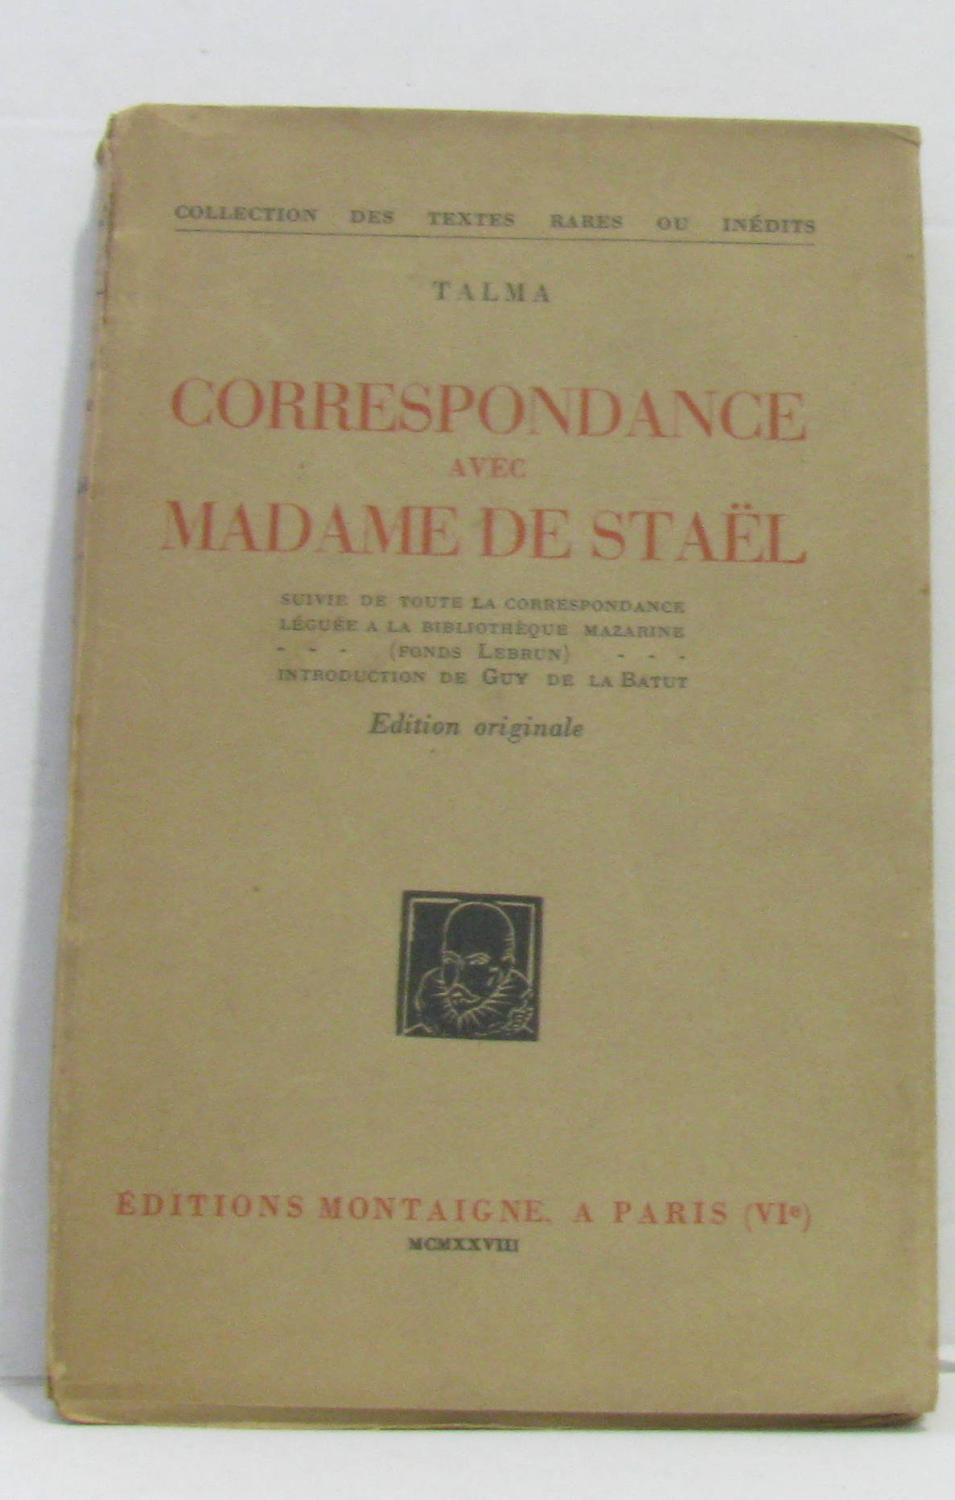 Correspondance avec madame de stael - Talma